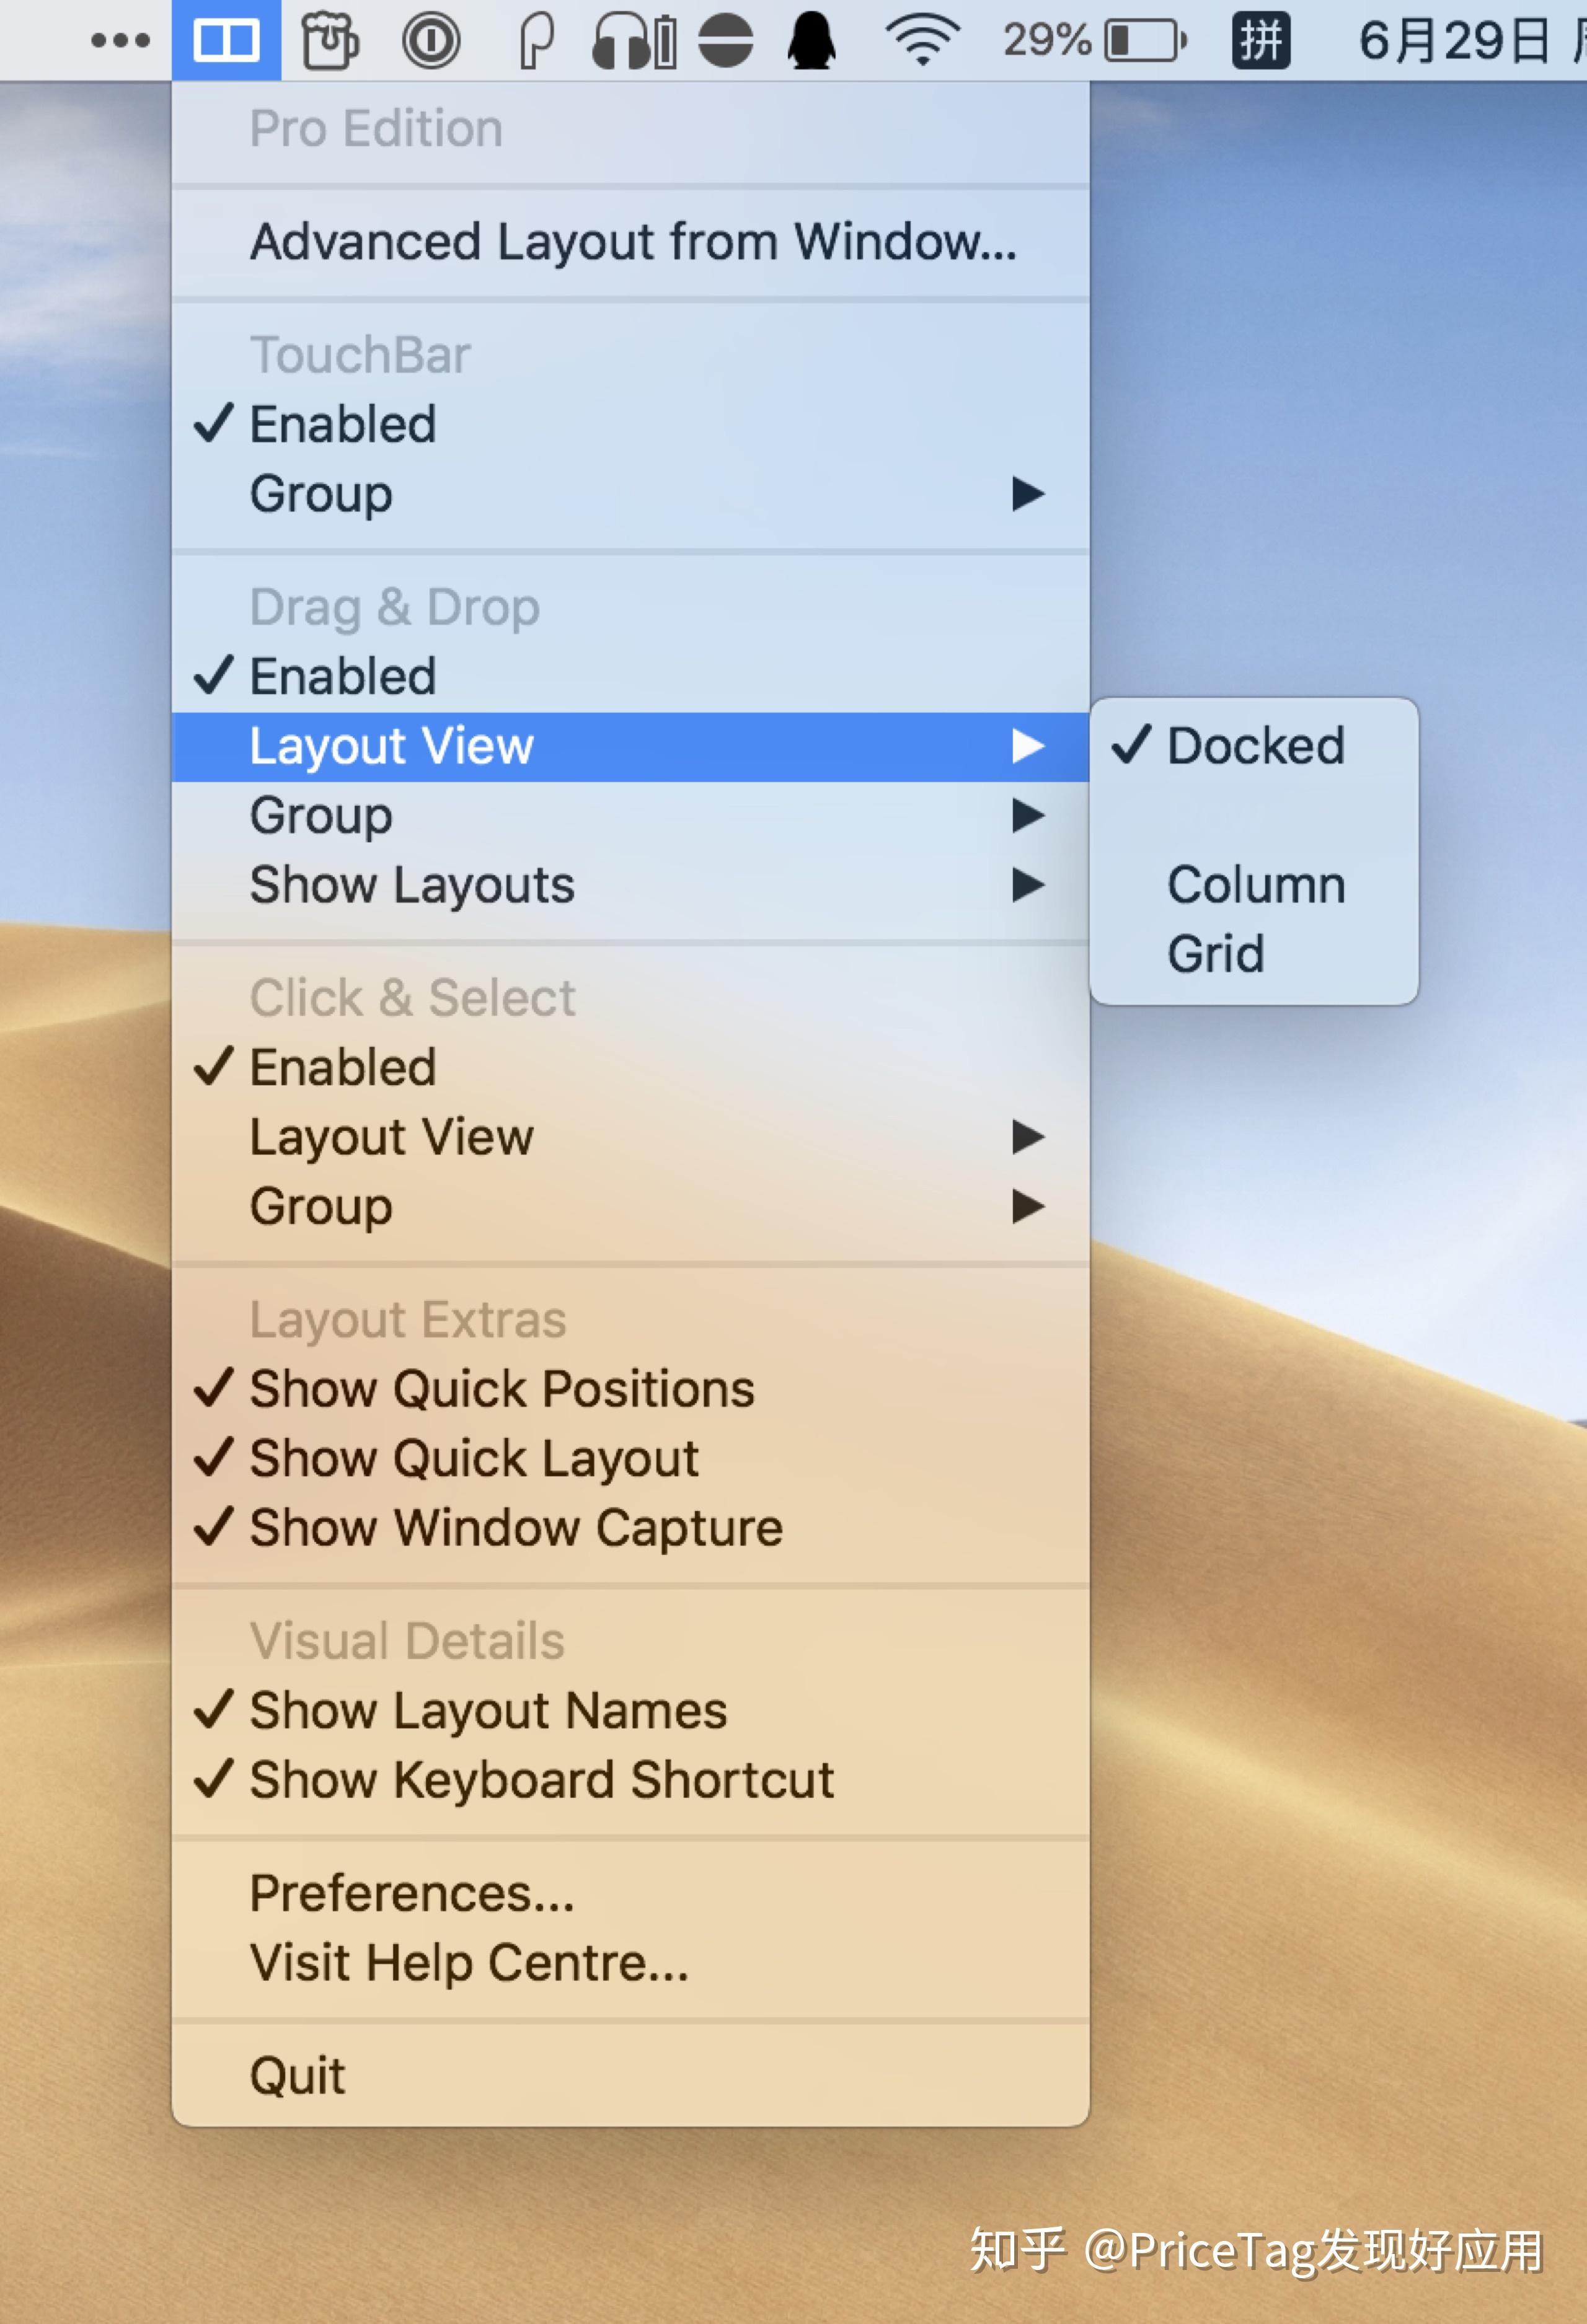 你需要的,可能就是这一款窗口管理利器:mosaic for mac